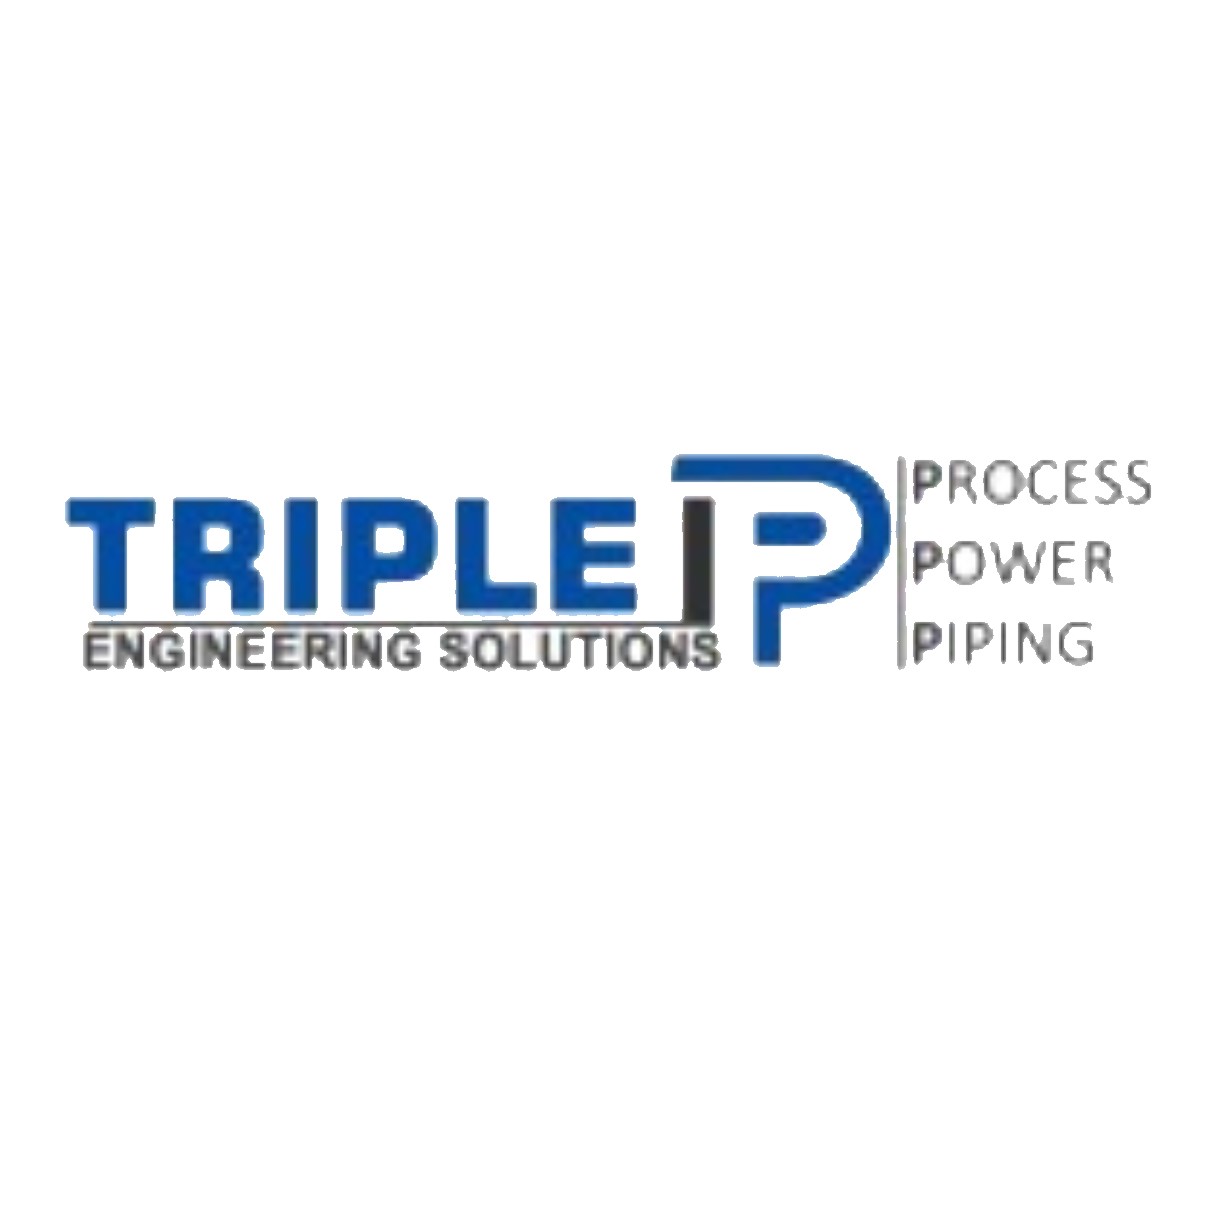 Triple P Engineering